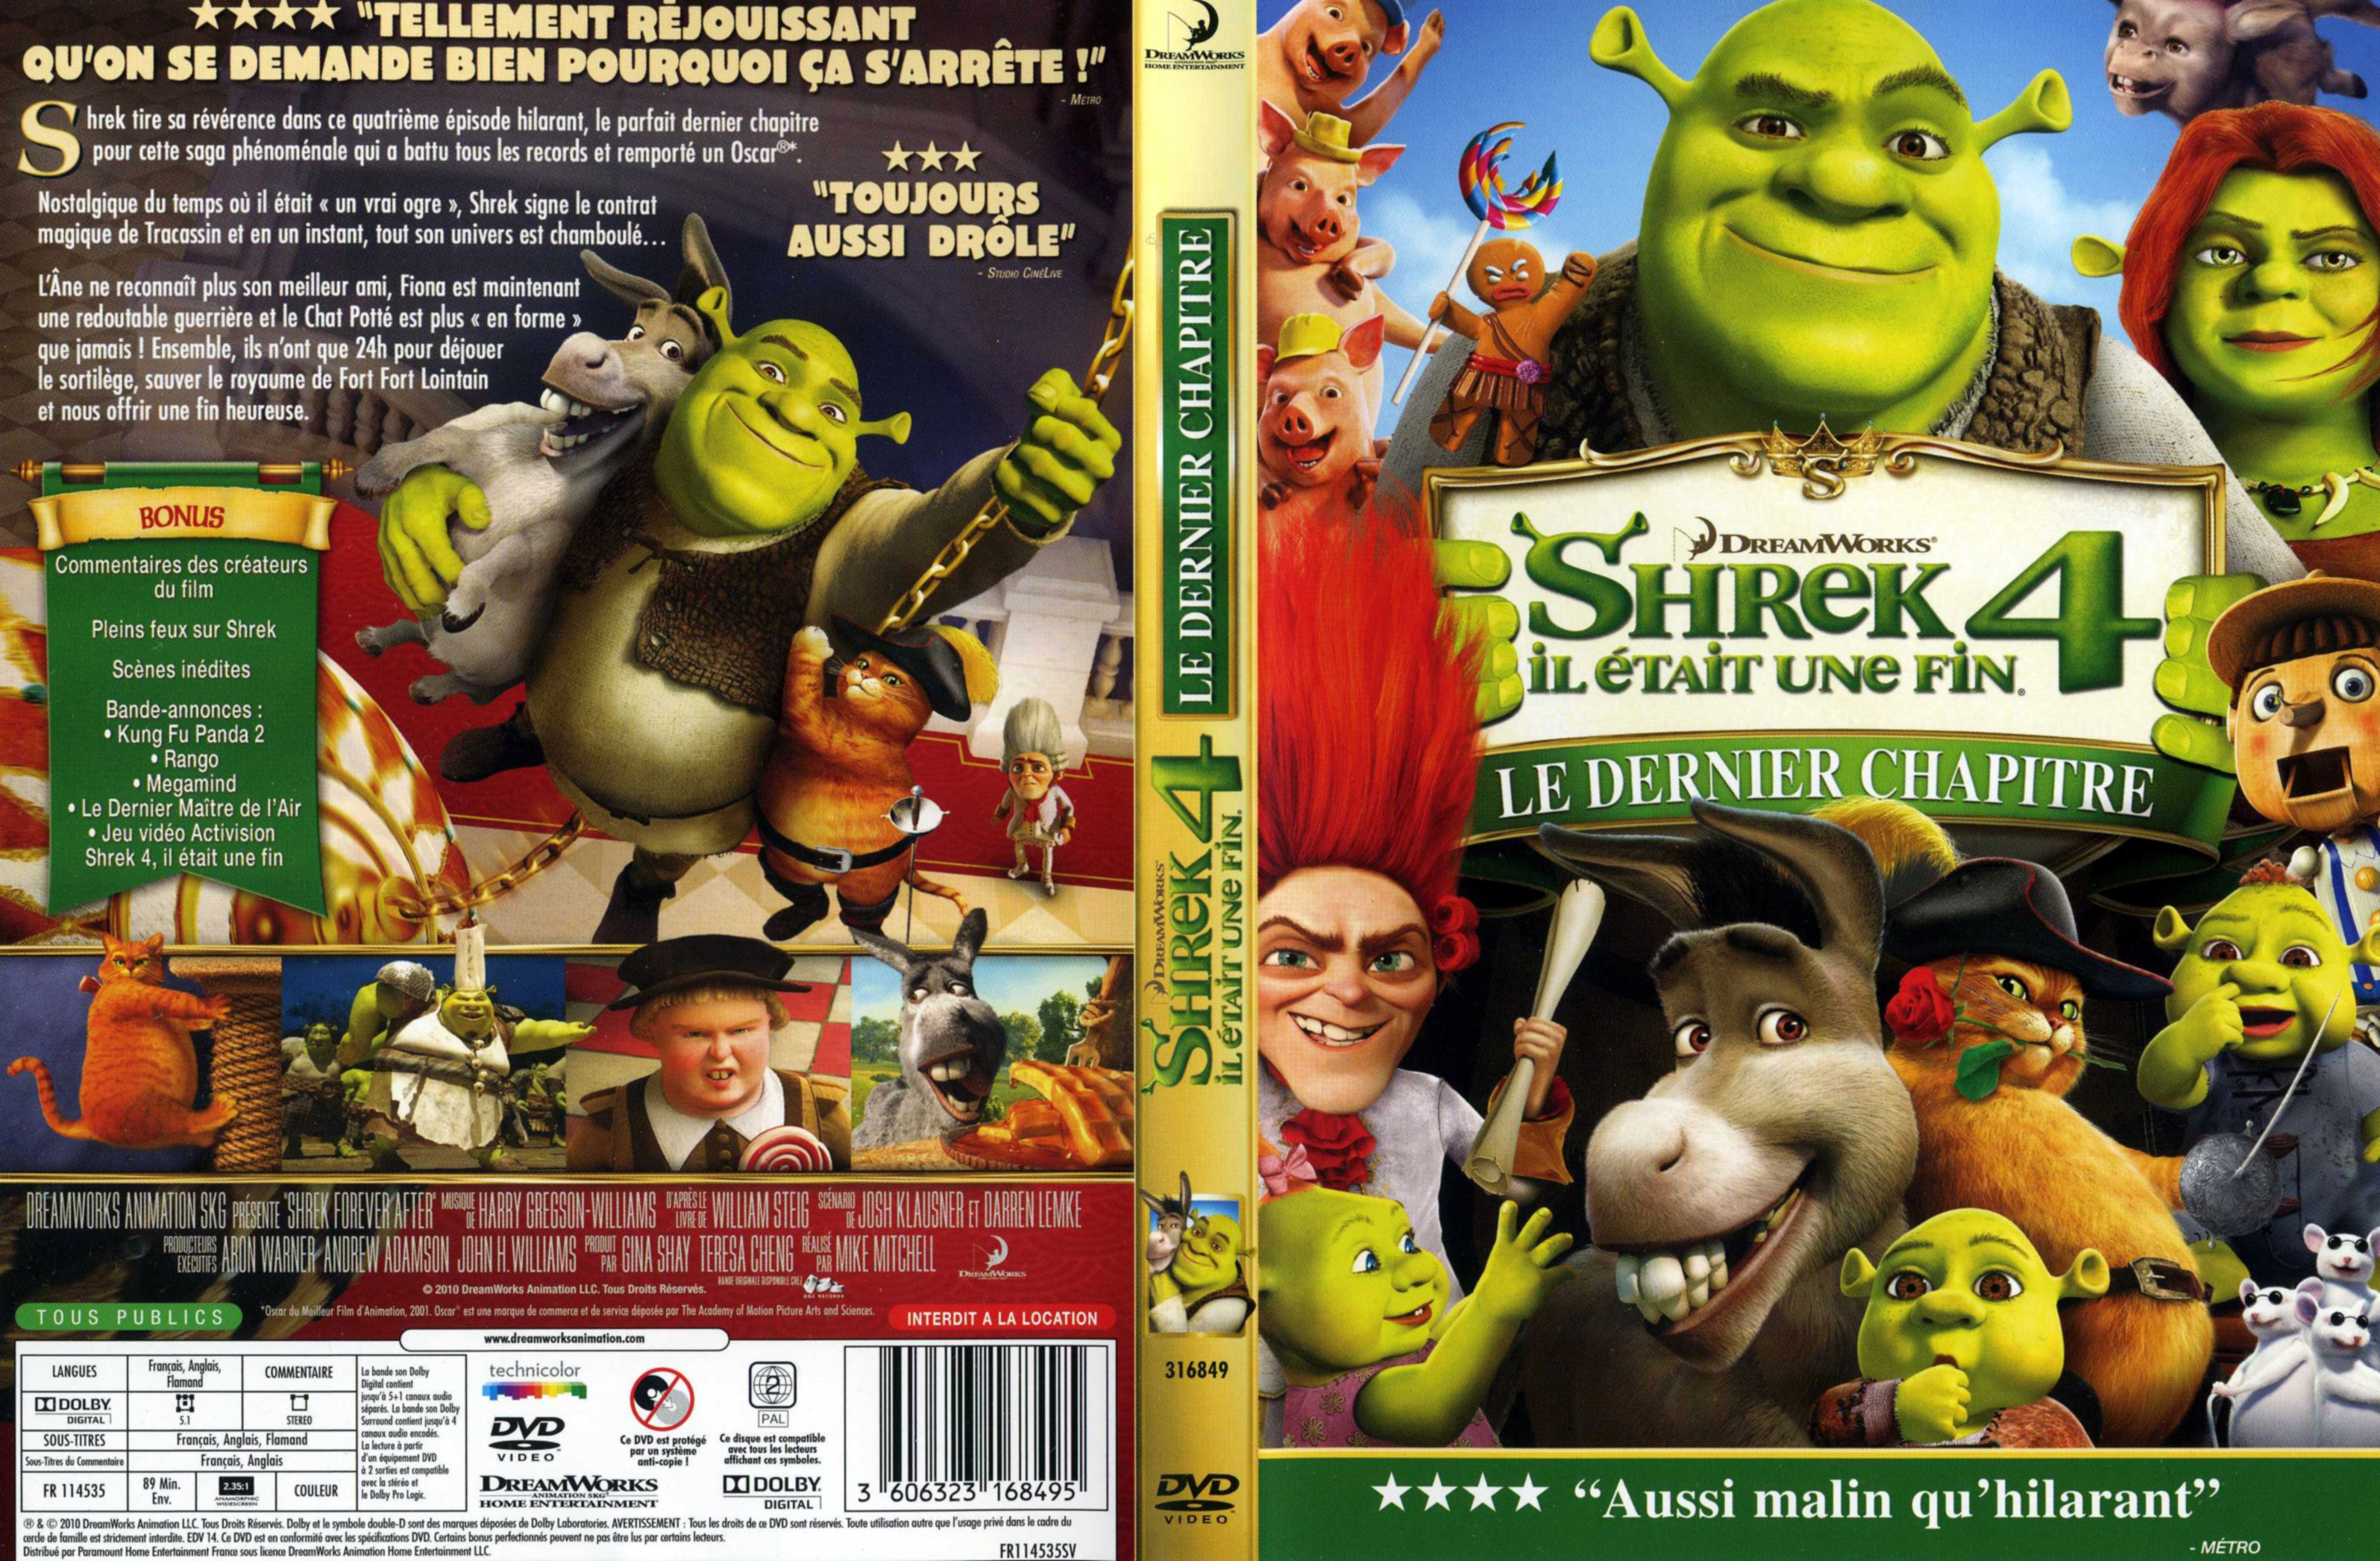 Jaquette DVD Shrek 4 il tait une fin